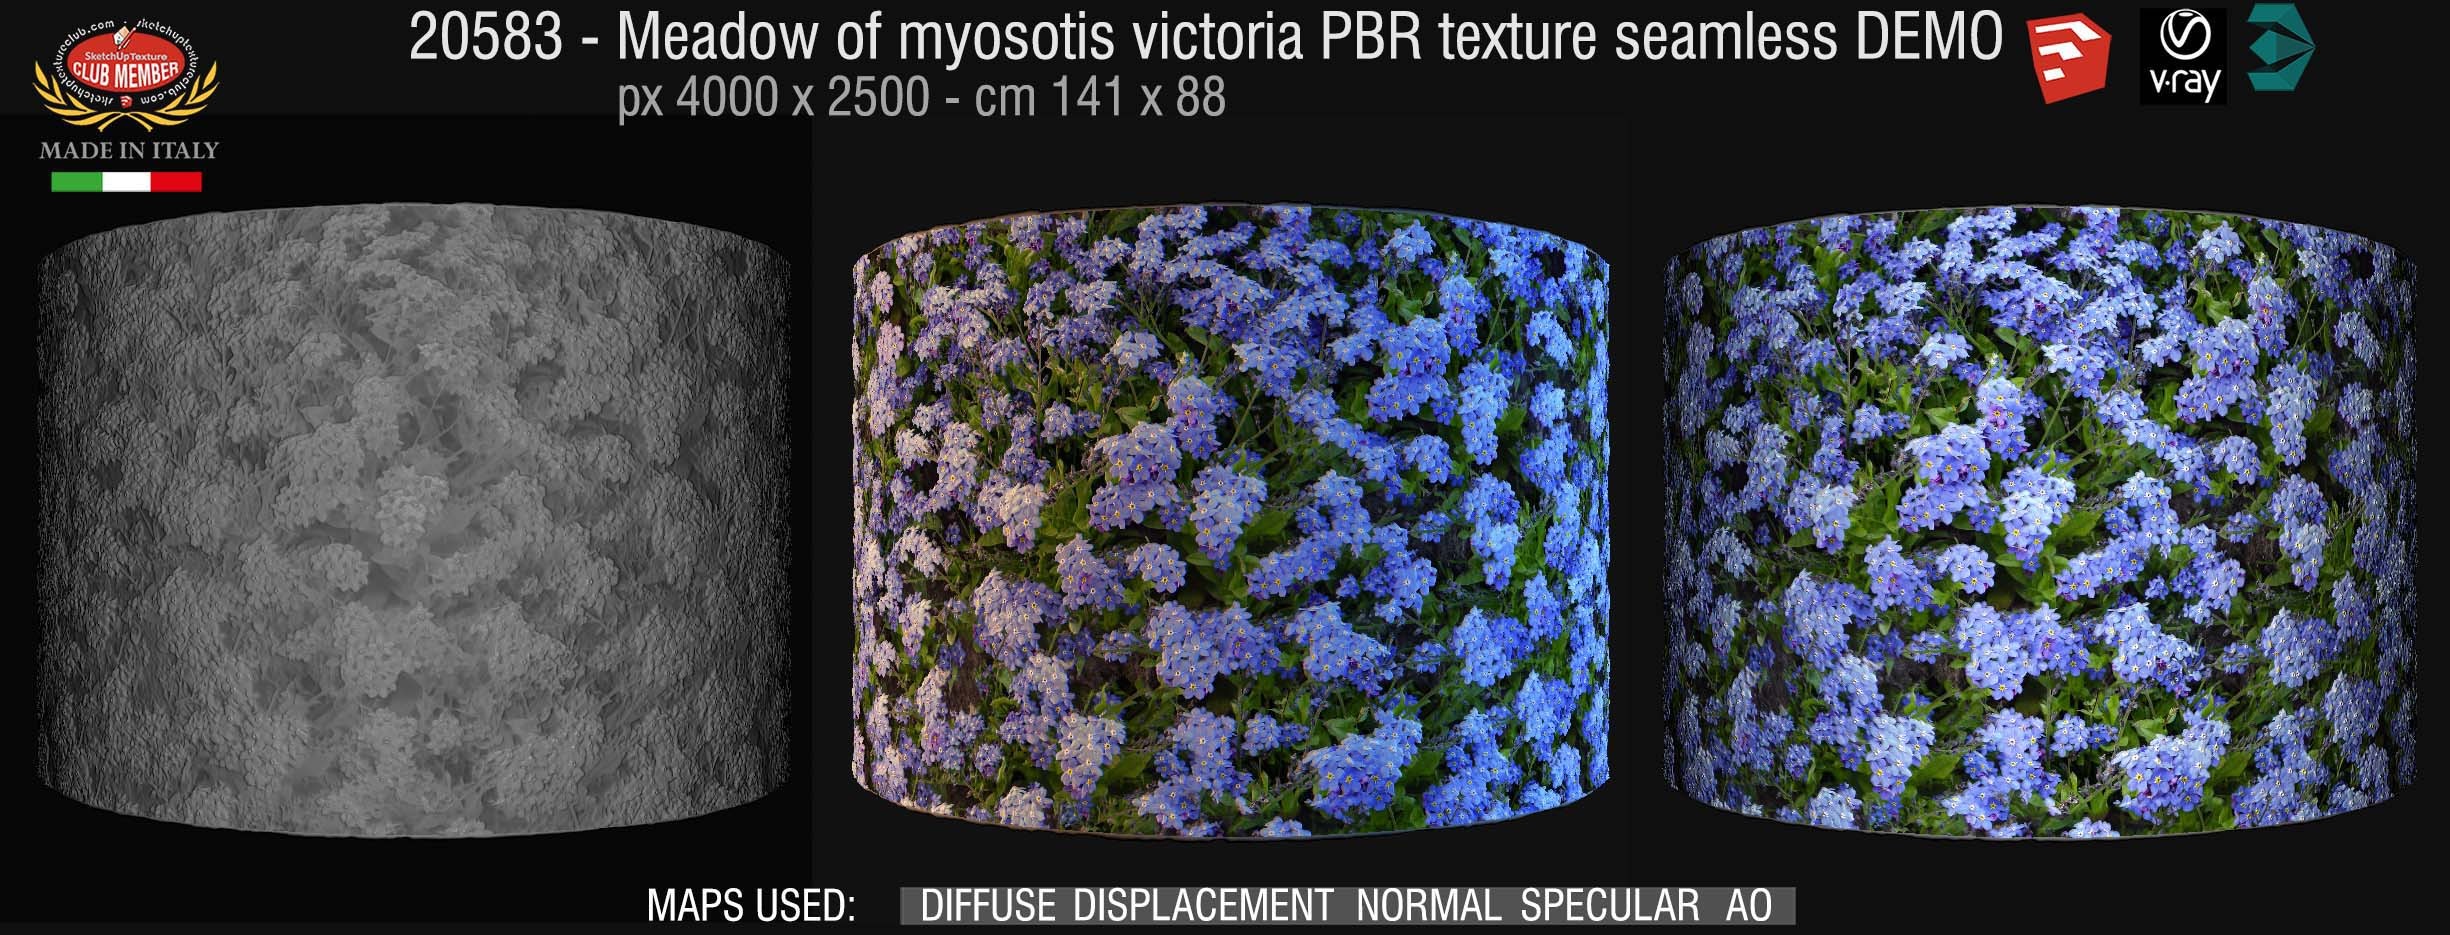 20583 Meadow of myosotis victoria PBR texture seamless DEMO